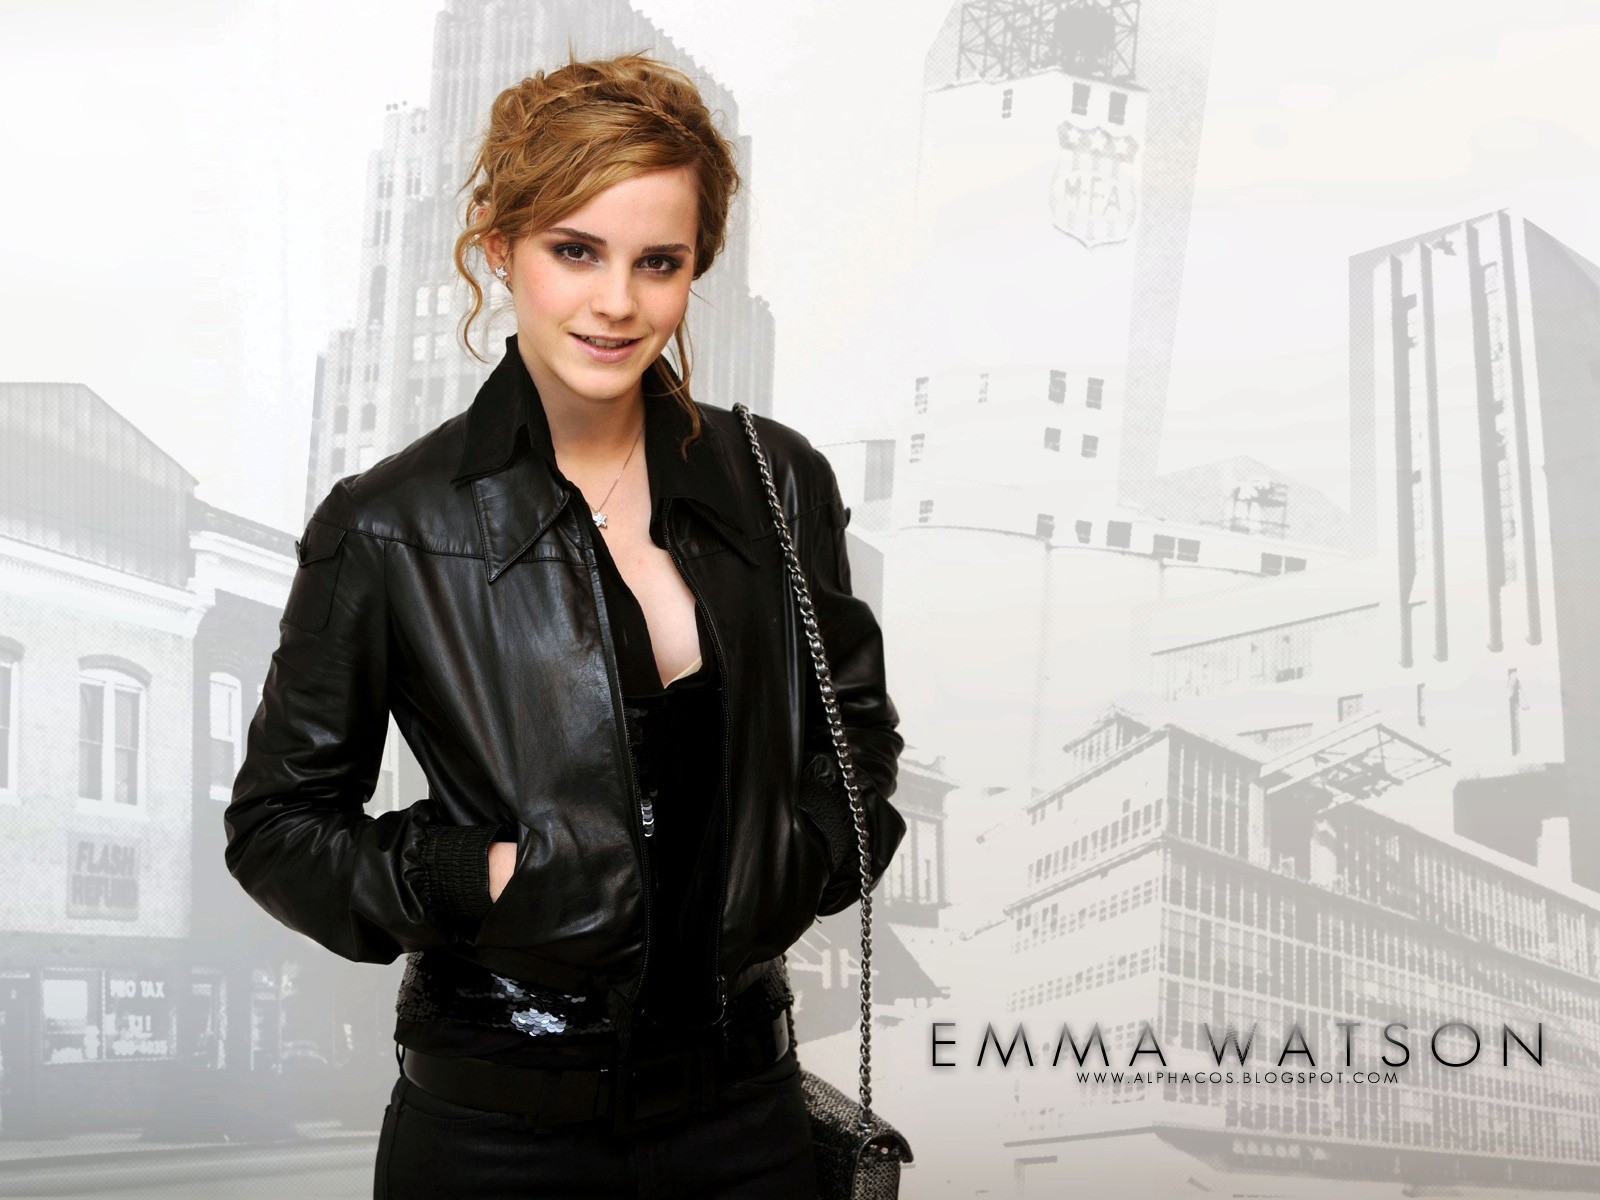 People 1600x1200 smiling handbags women looking at viewer necklace leather jacket jacket hands in pockets Emma Watson British women women indoors indoors studio actress